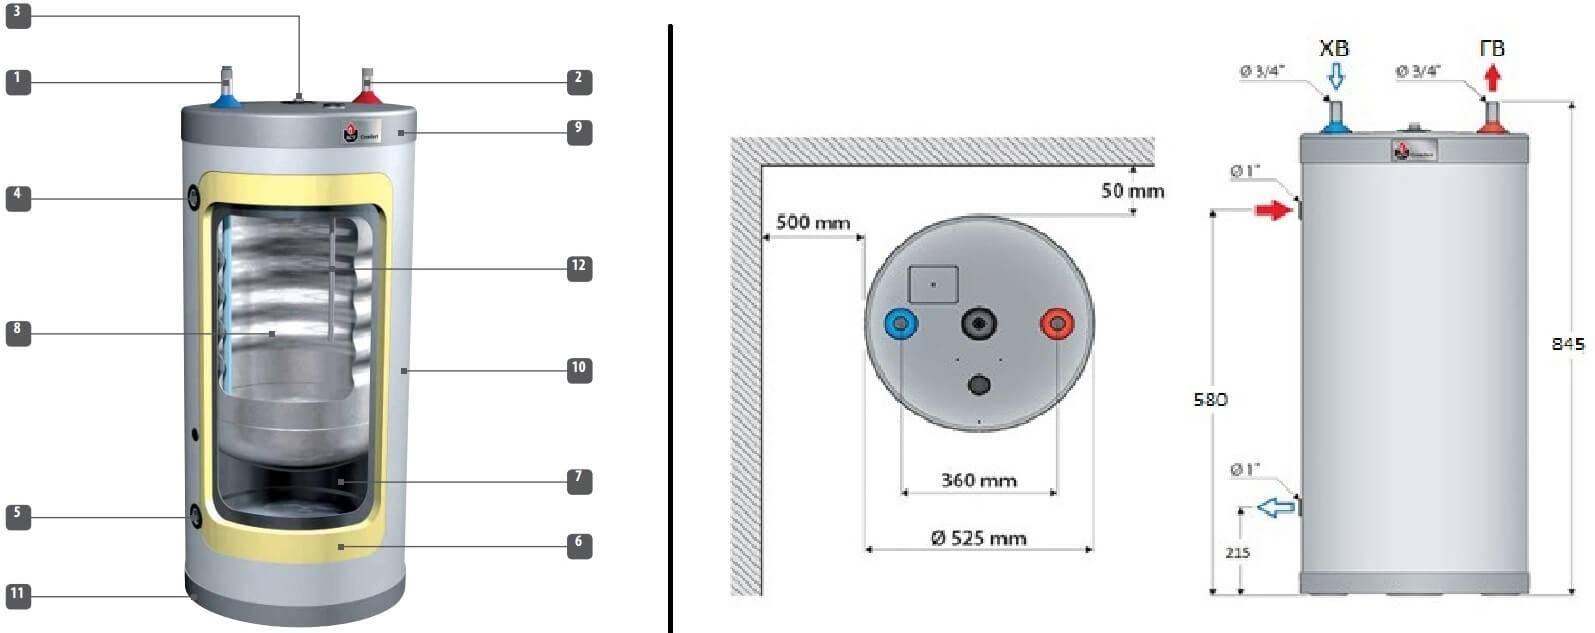 Устройство электрического водонагревателя накопительного и проточного. какой лучше выбрать